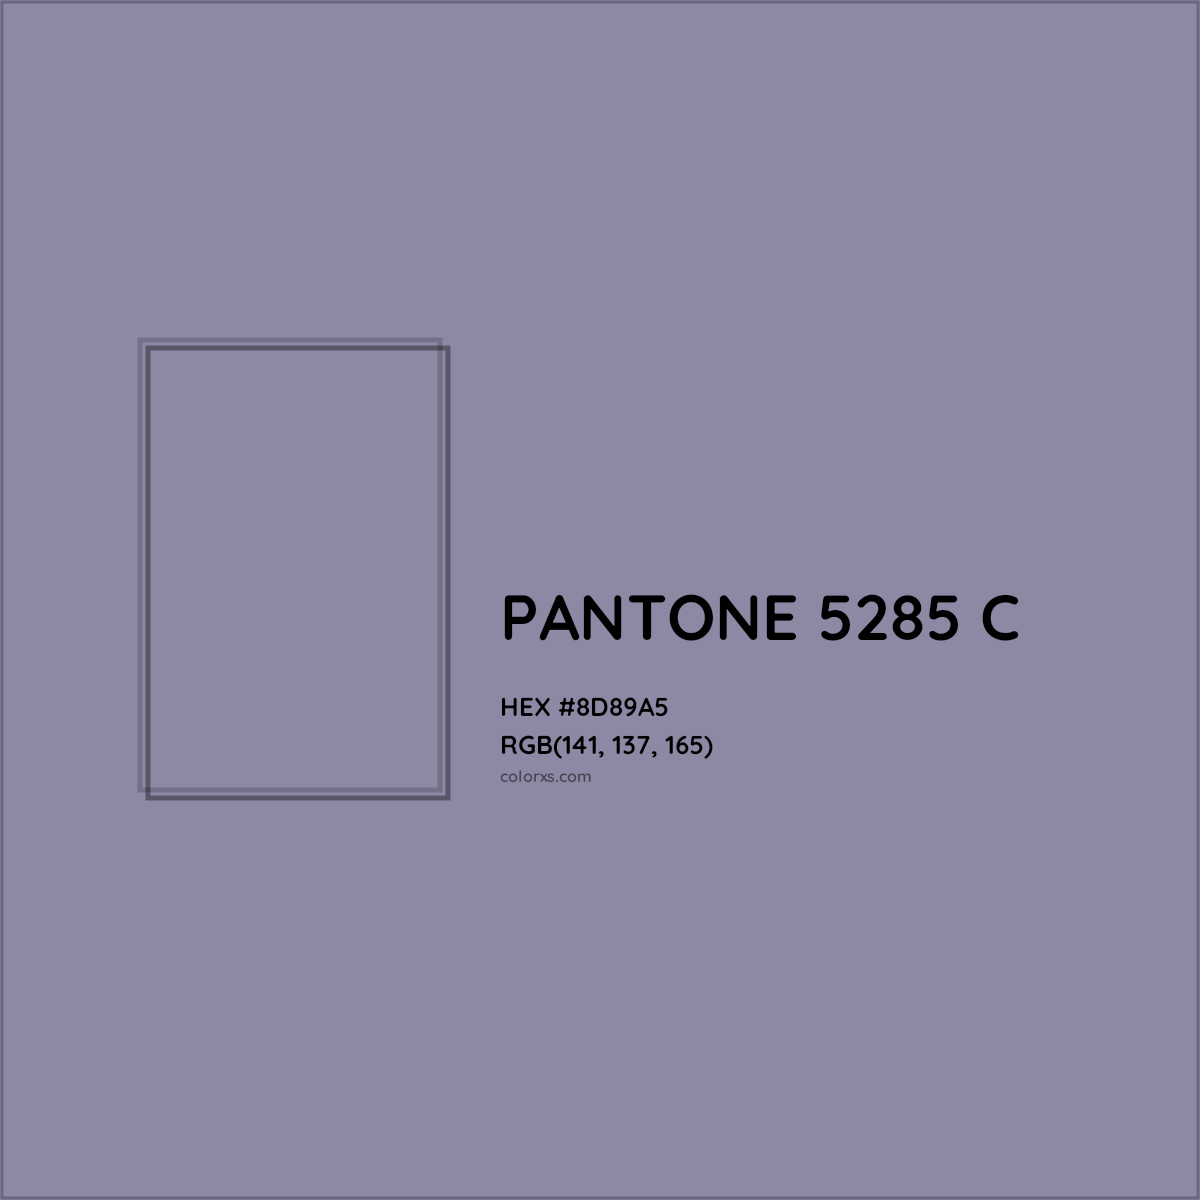 HEX #8D89A5 PANTONE 5285 C CMS Pantone PMS - Color Code